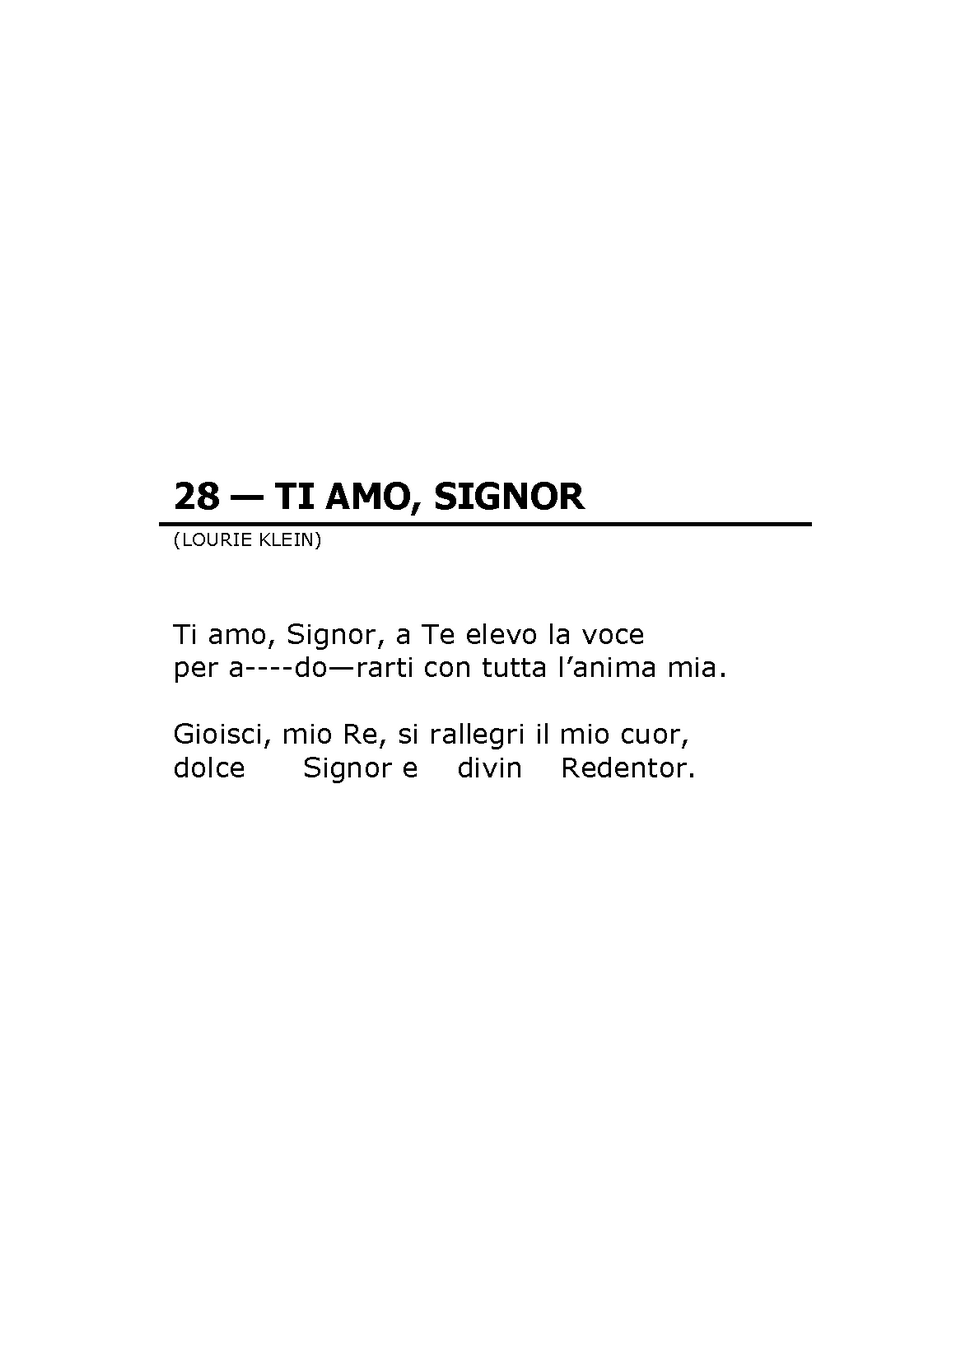 Canto 28